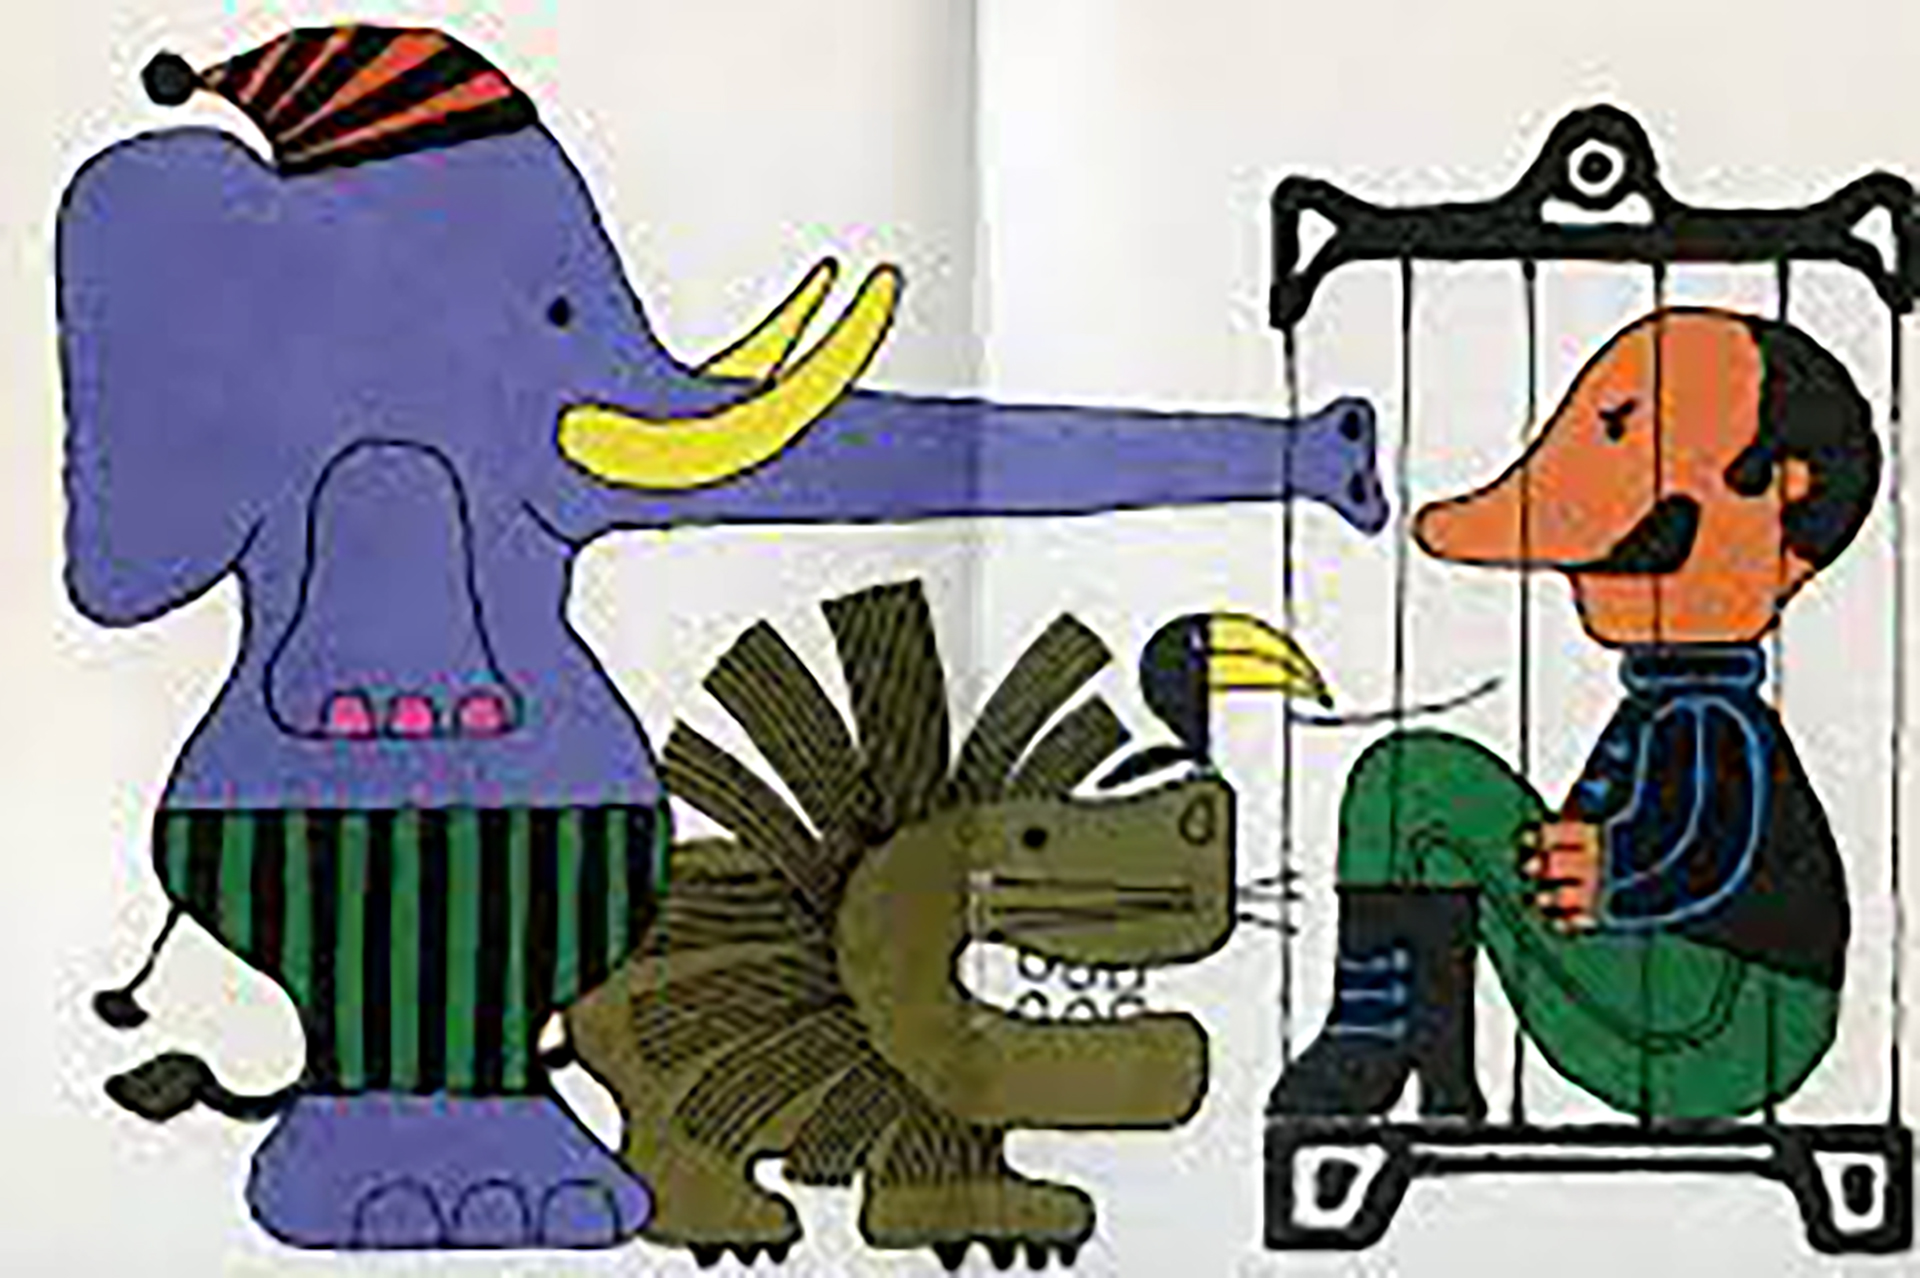 Una imagen de "Un elefante ocupa mucho espacio", el libro prohibido de Elsa Bornemann